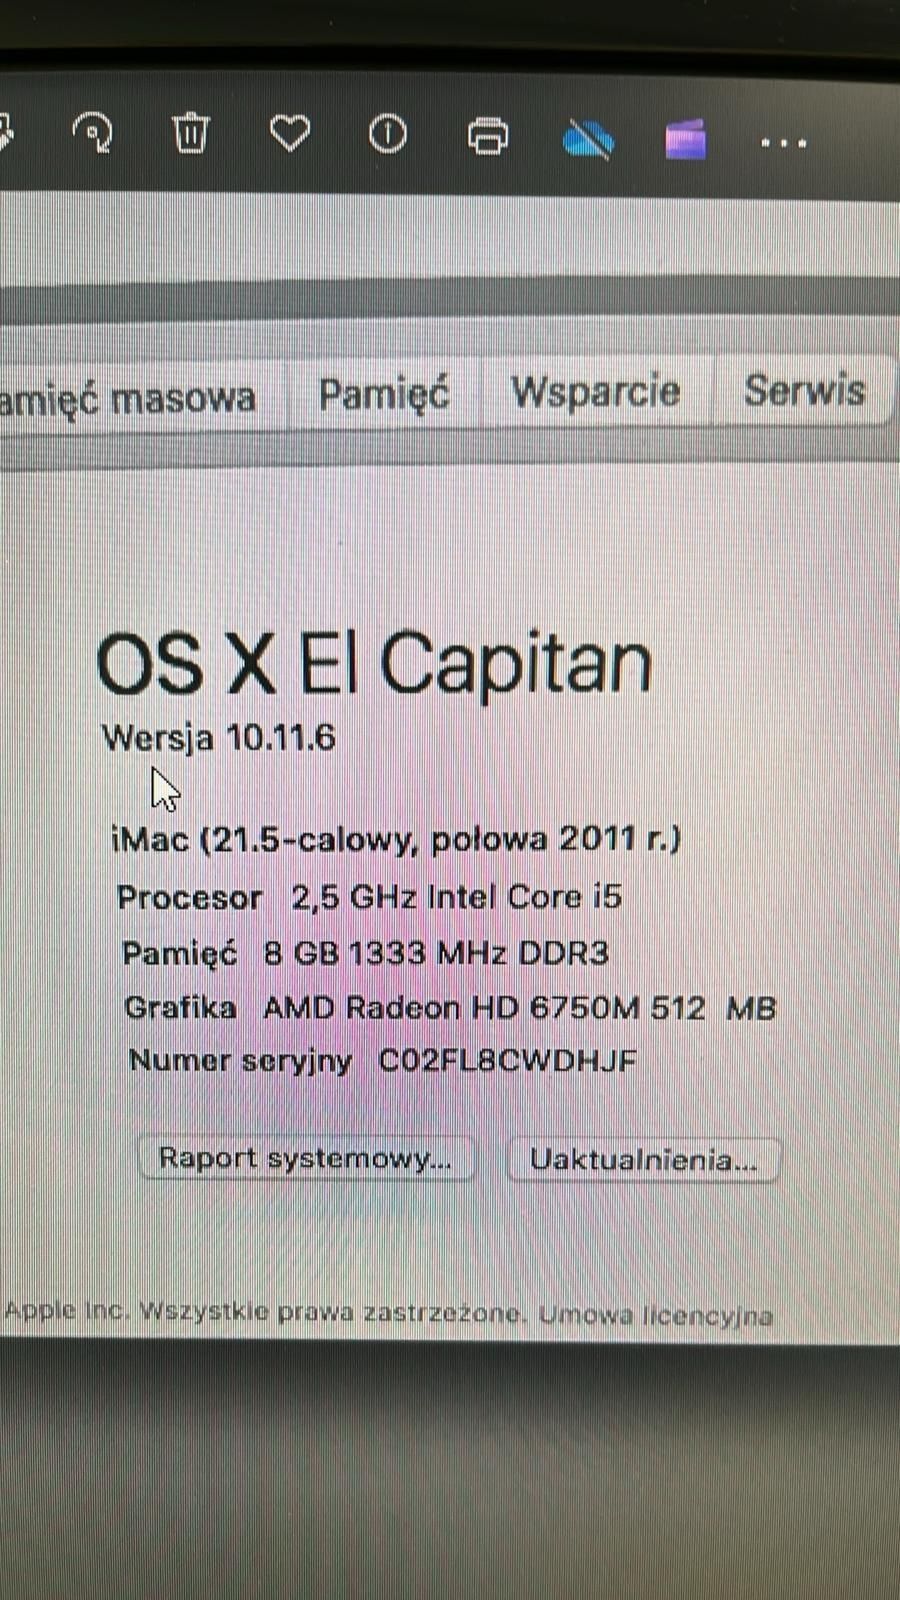 Apple iMac 21" 2011, i5 8GB 240GB SSD